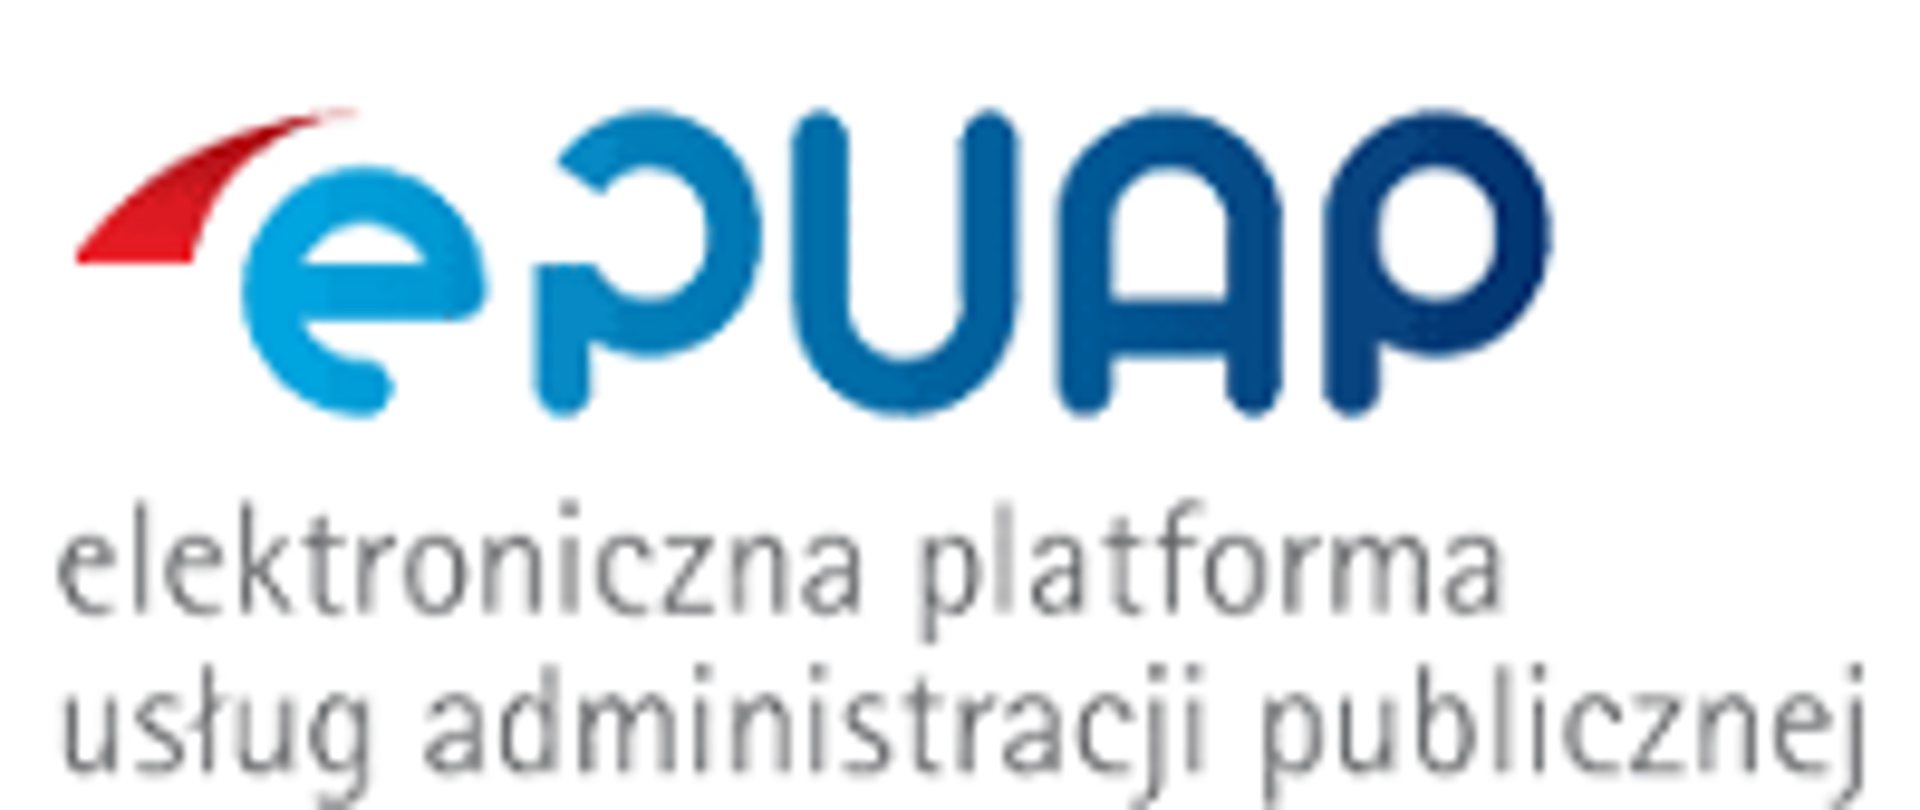 elektroniczna platforma usług administracji publicznej